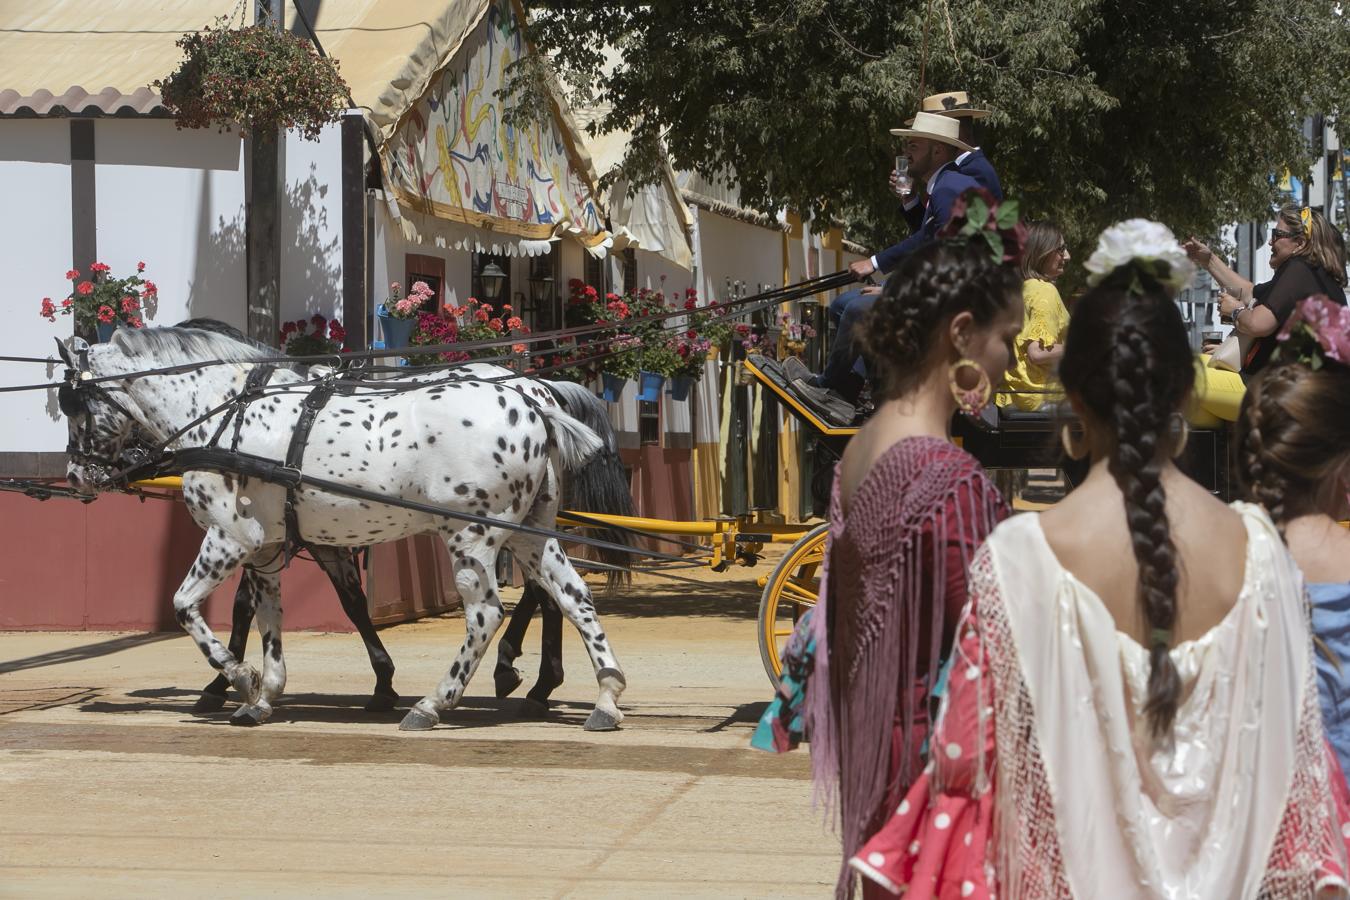 La jornada del miércoles en la Feria de Córdoba, en imágenes